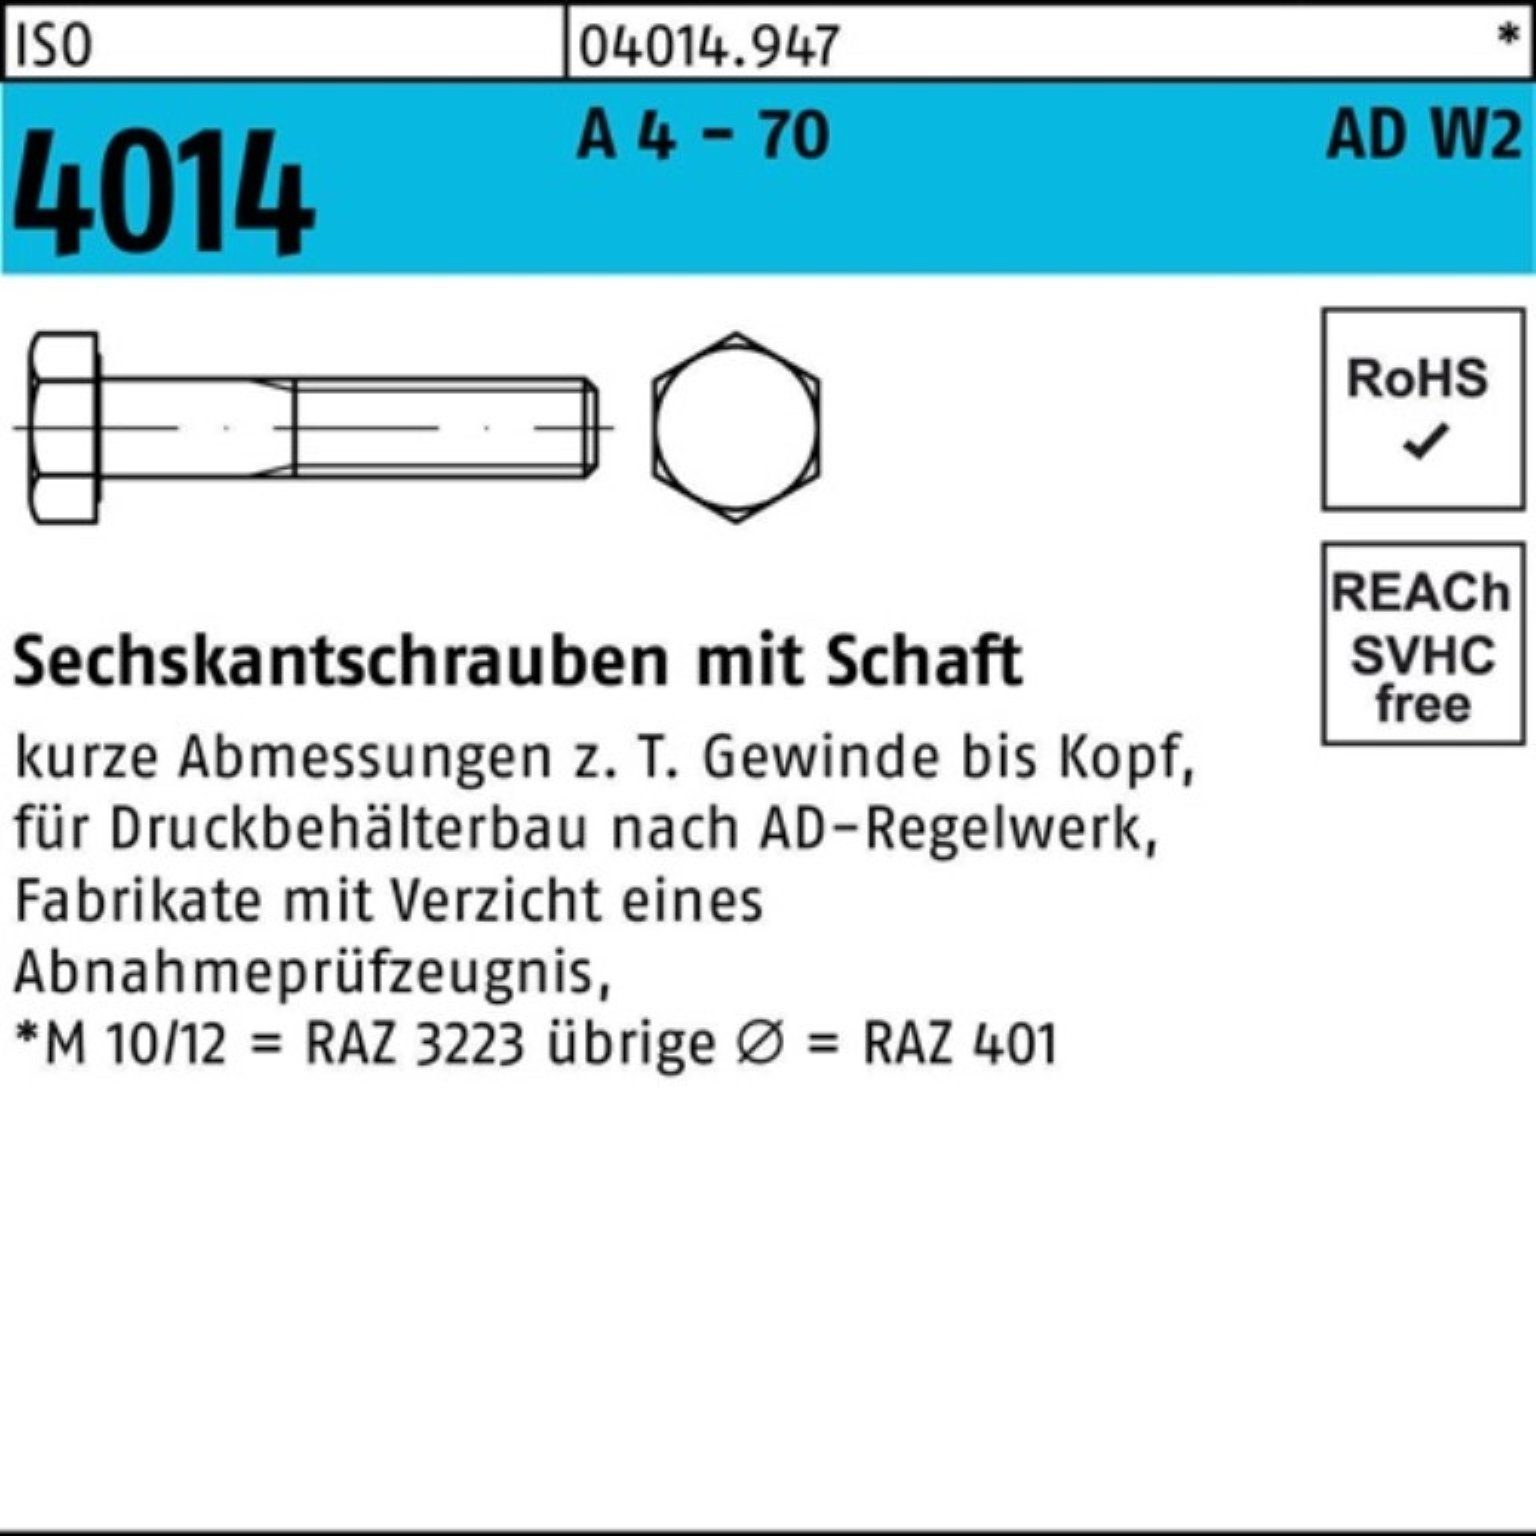 Bufab Sechskantschraube ISO - 1 100er 4014 AD-W2 Sechskantschraube 70 Pack A Schaft 170 M20x 4